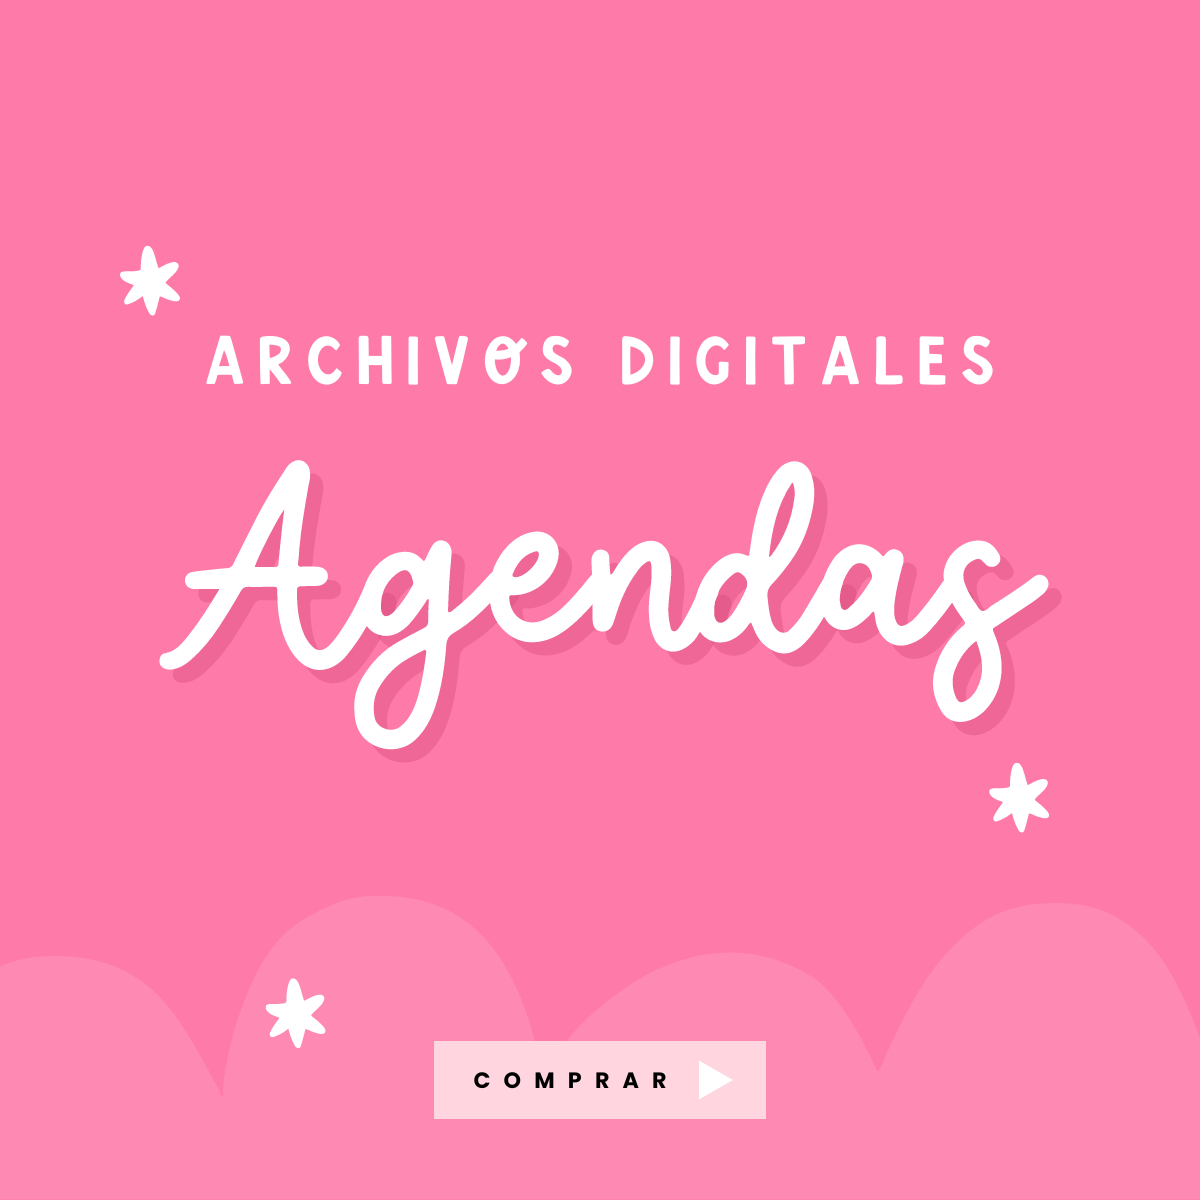 Archivos digitales Agendas